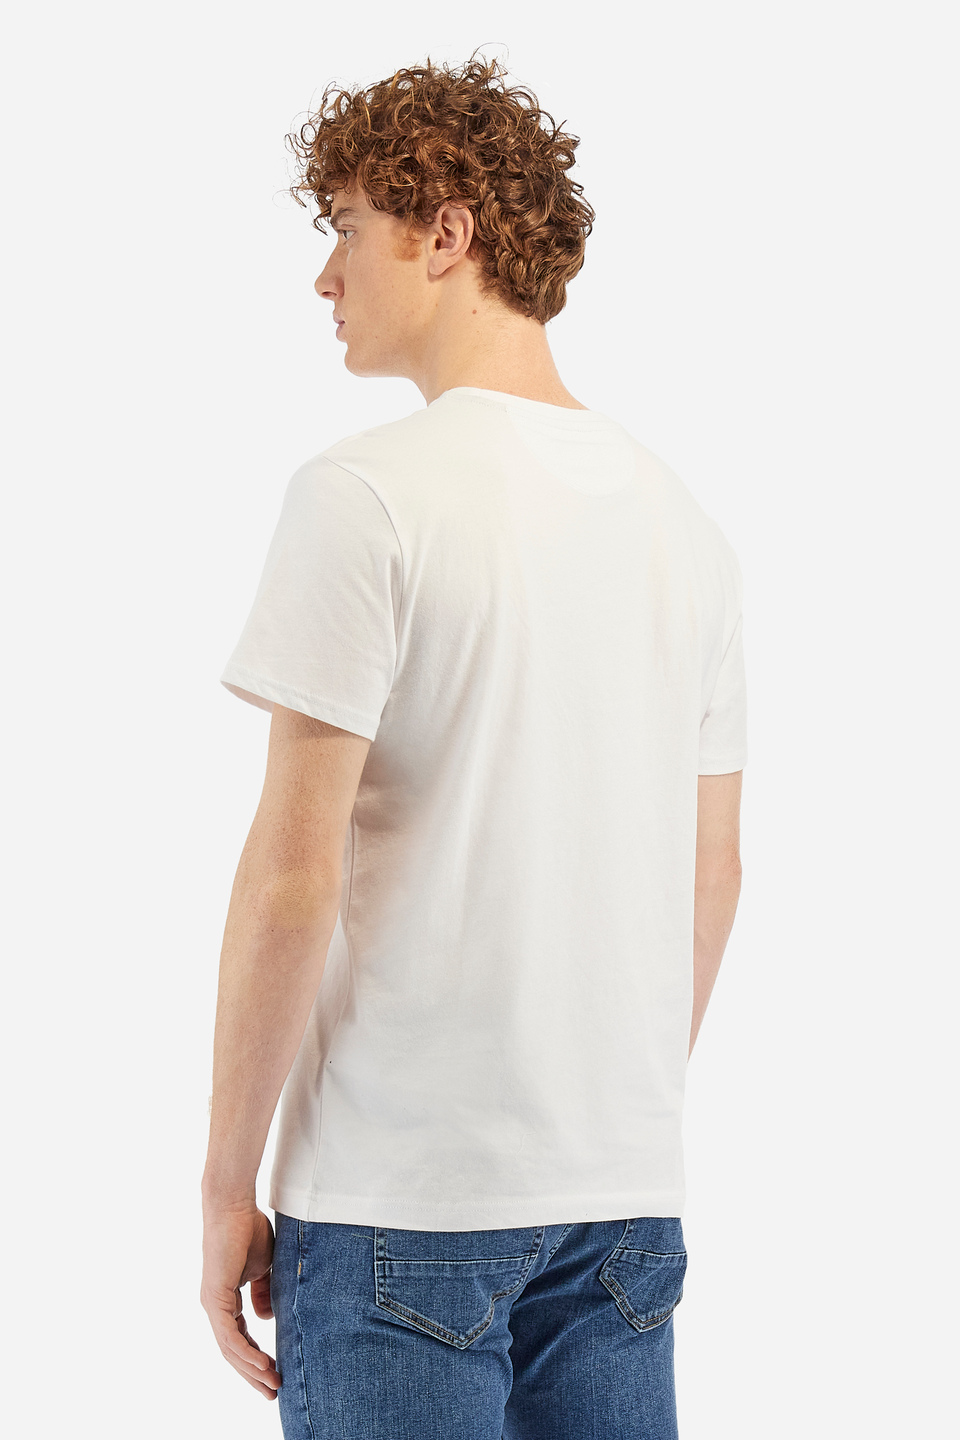 Herren-T-Shirt Regular Fit - Wakefield | La Martina - Official Online Shop